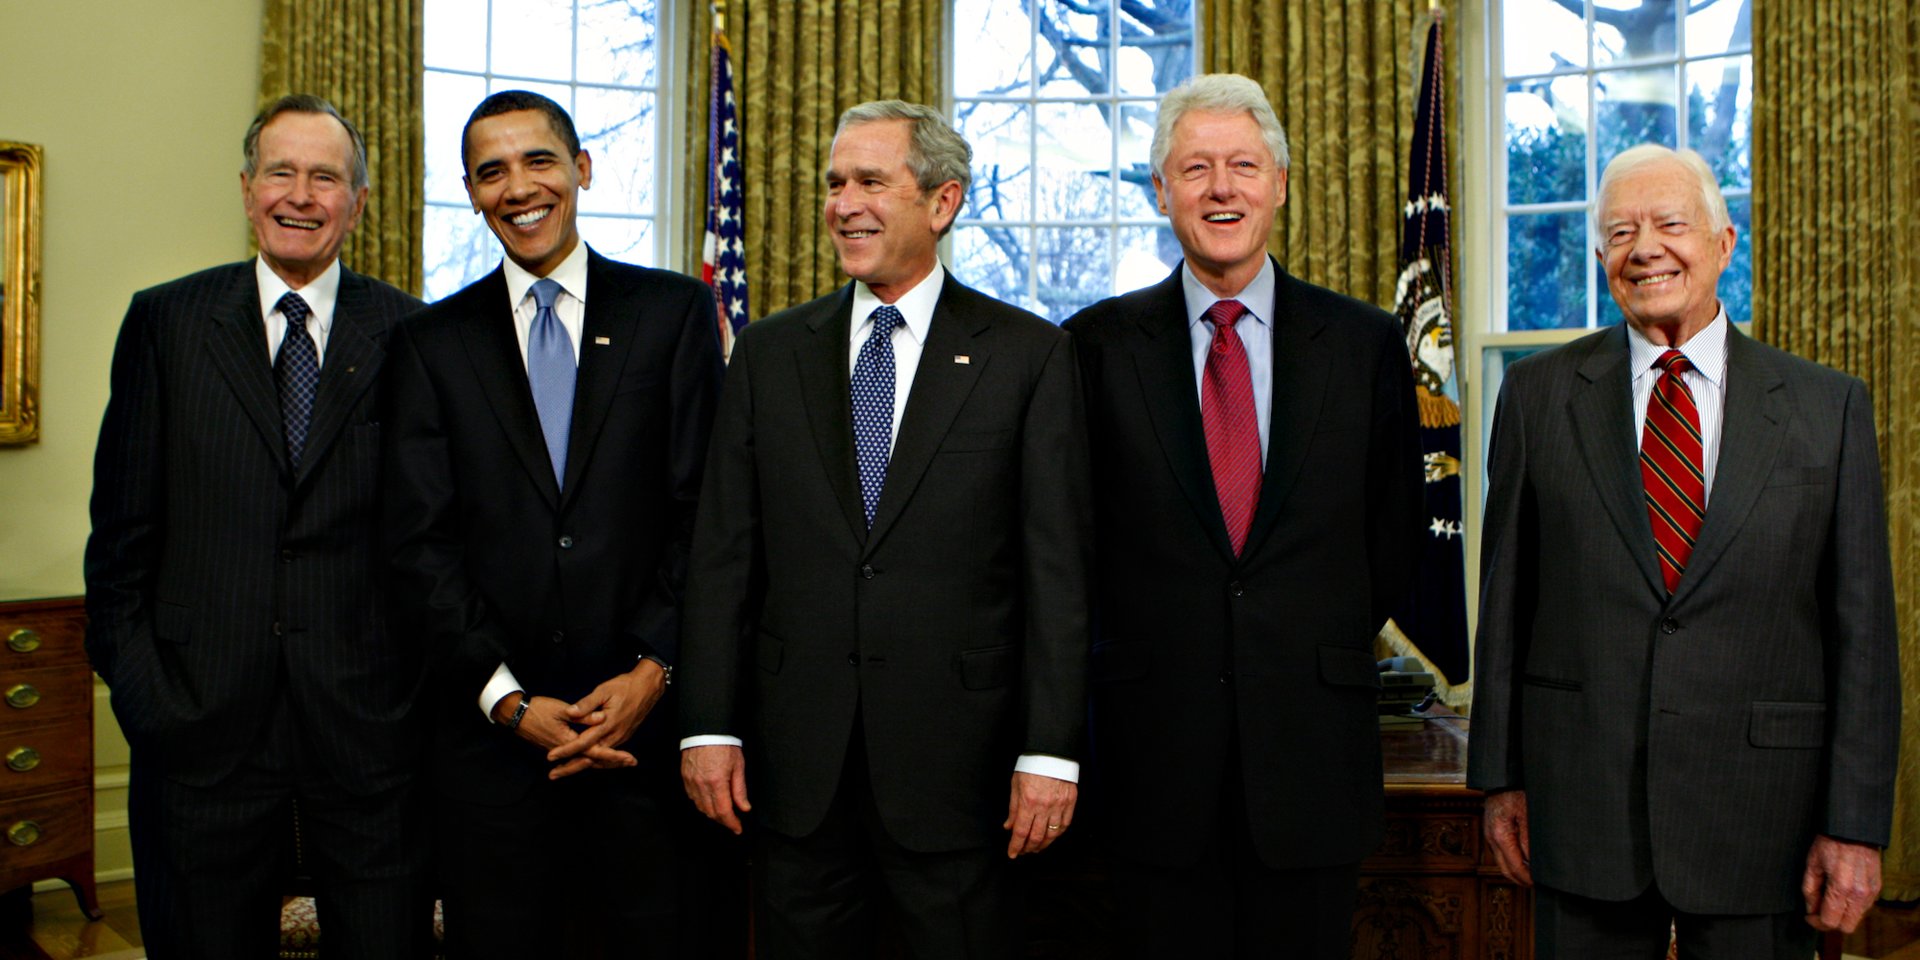 Năm tổng thống Mỹ gần nhất trước thời Donald Trump (từ trái sang): George H.W. Bush, Barack Obama, George W. Bush, Bill Clinton và Jimmy Carter, tại Nhà Trắng ngày 07/01/2009. Ảnh: J. Scott Applewhite/AP.